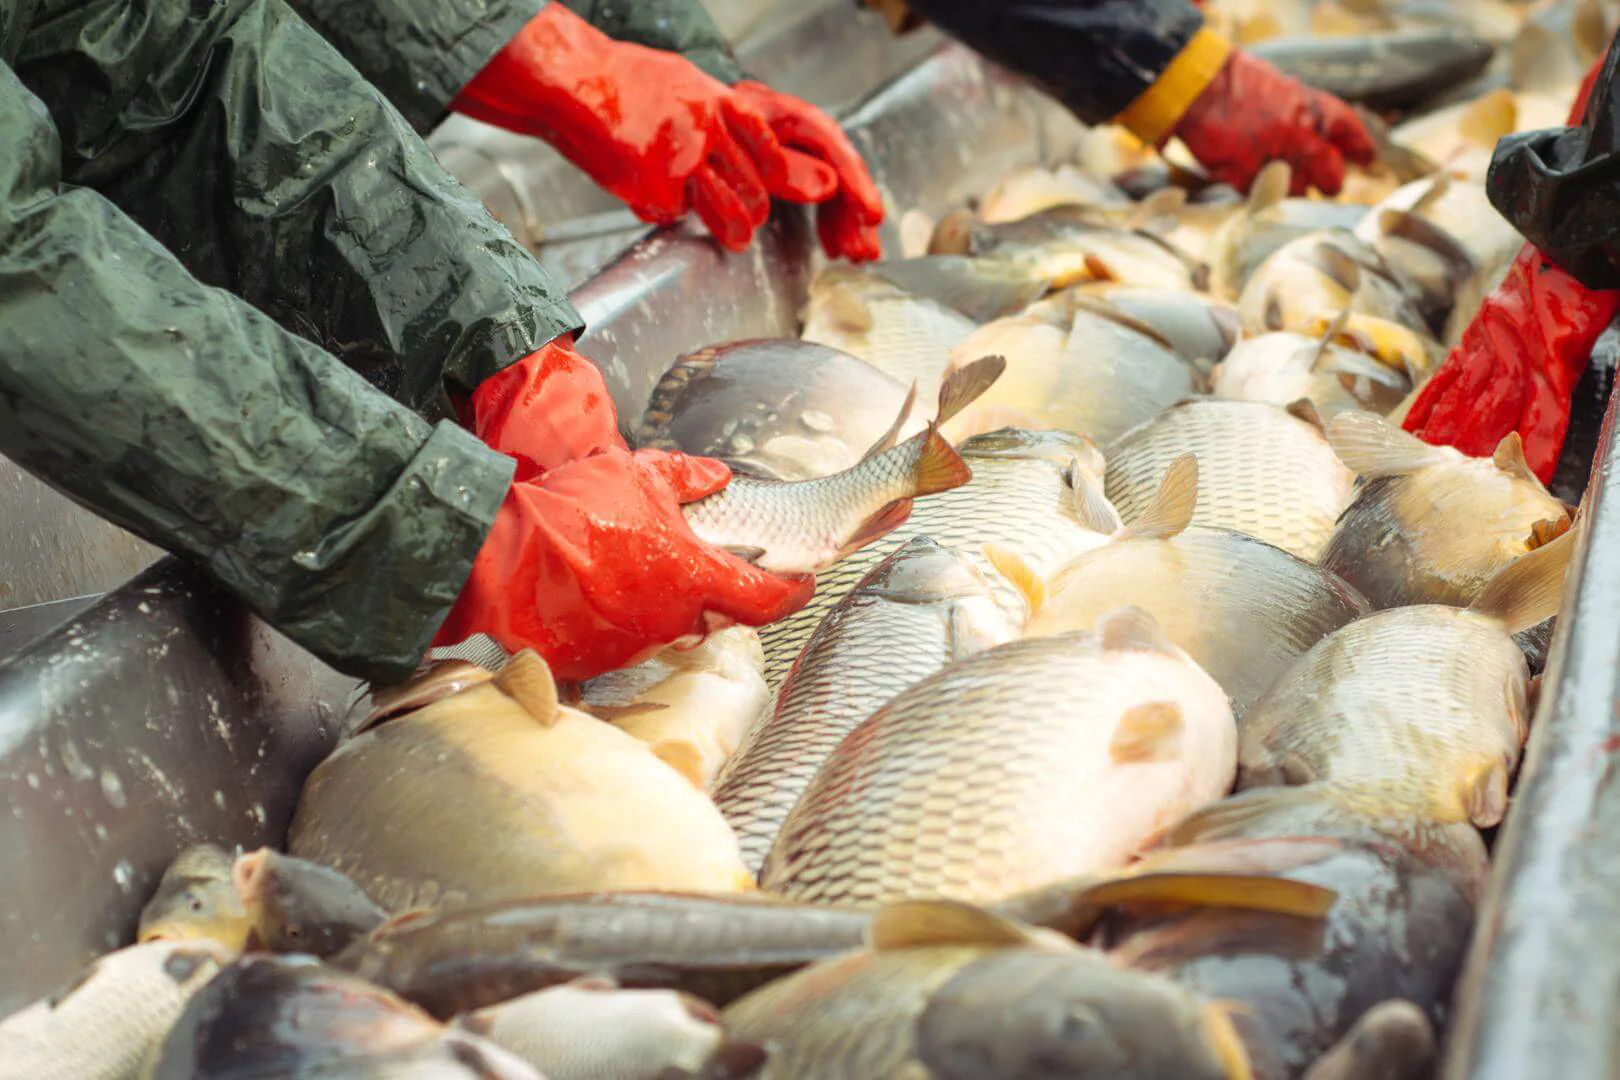 Agência ALESC  Cultivo de peixes pode dar lucro de R$ 1 por kg produzido